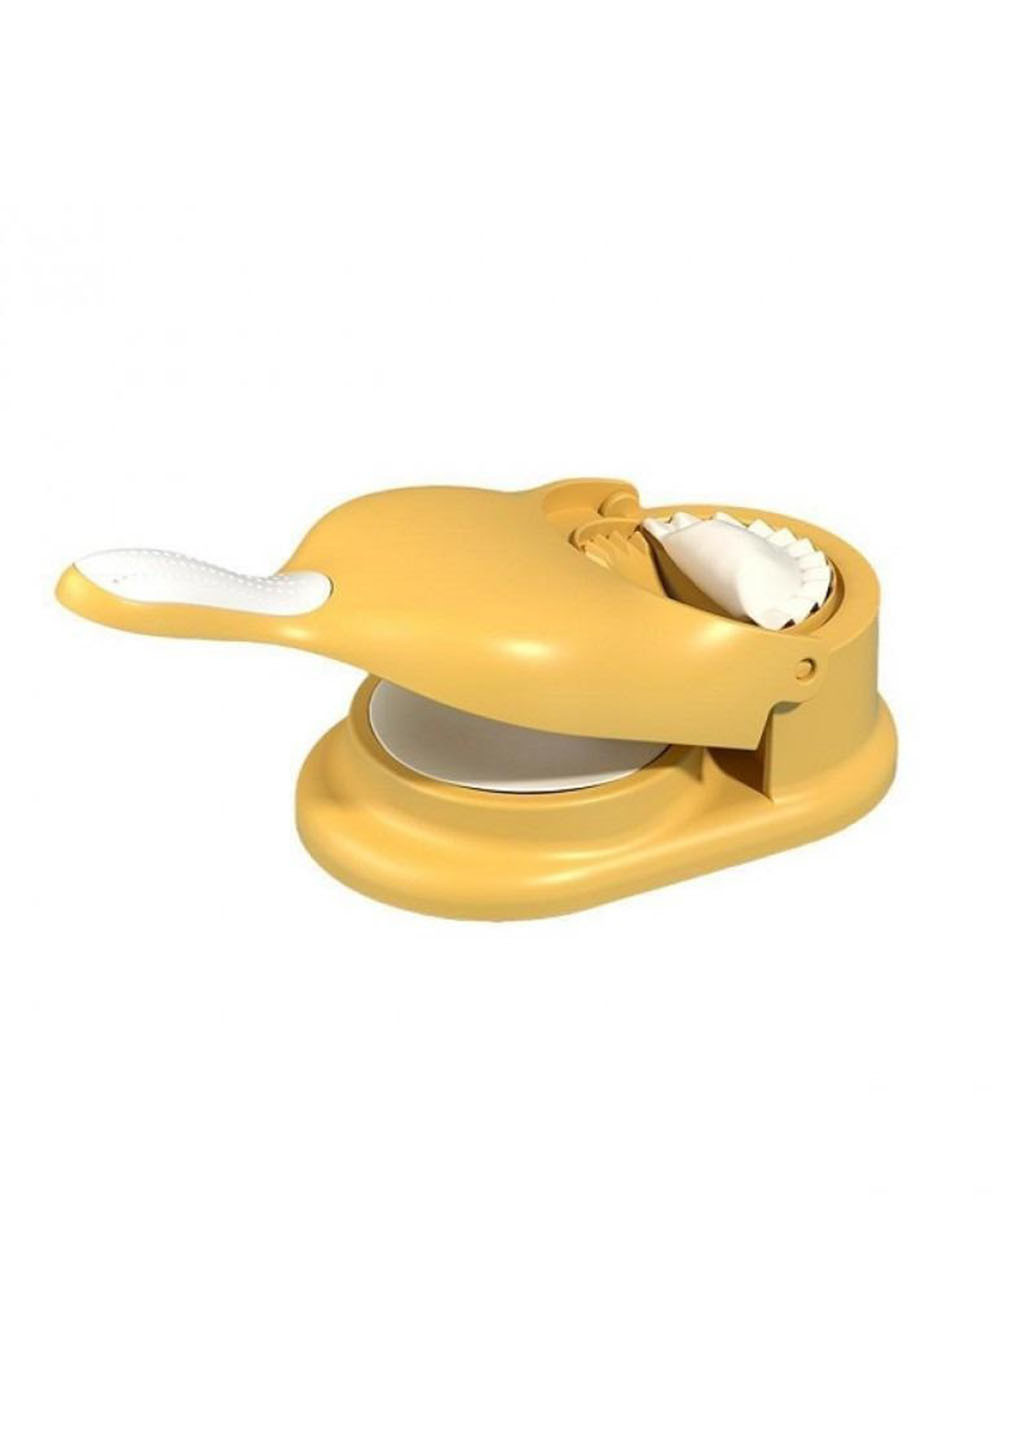 Ручна машинка-апарат для розкачування тіста й автоматичного ліплення вареників і пельменів Good Idea dumpling mold 2в1 (260165838)